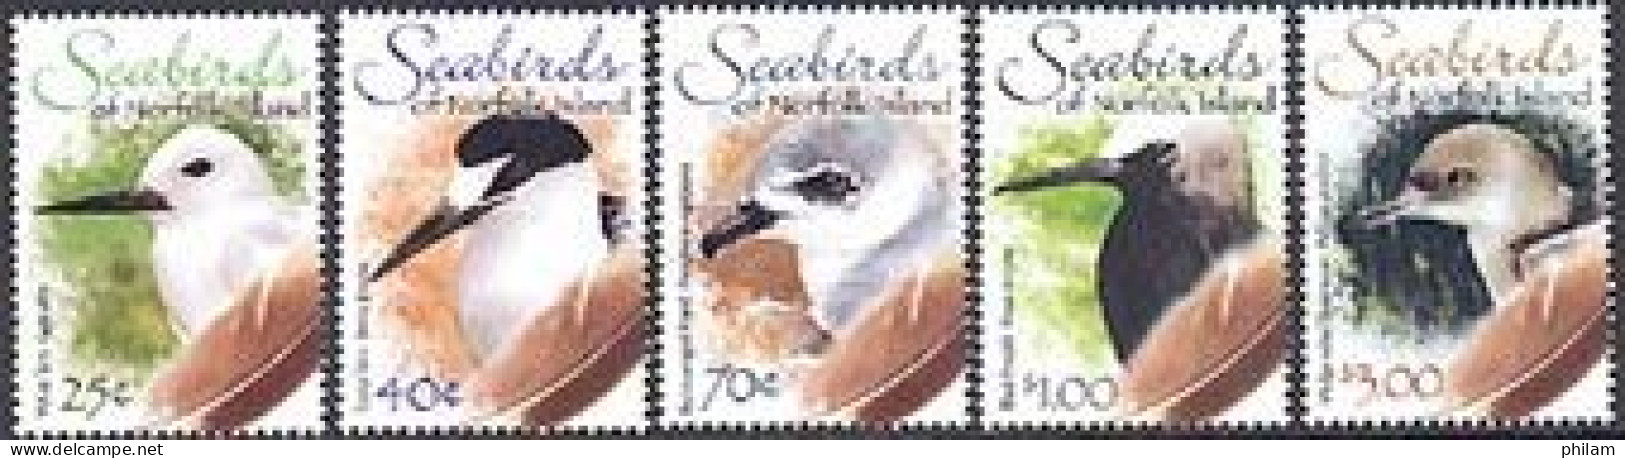 NORFOLK 2006 - Oiseaux De Mer - II - (White Tern) - 5 V. - Gaviotas